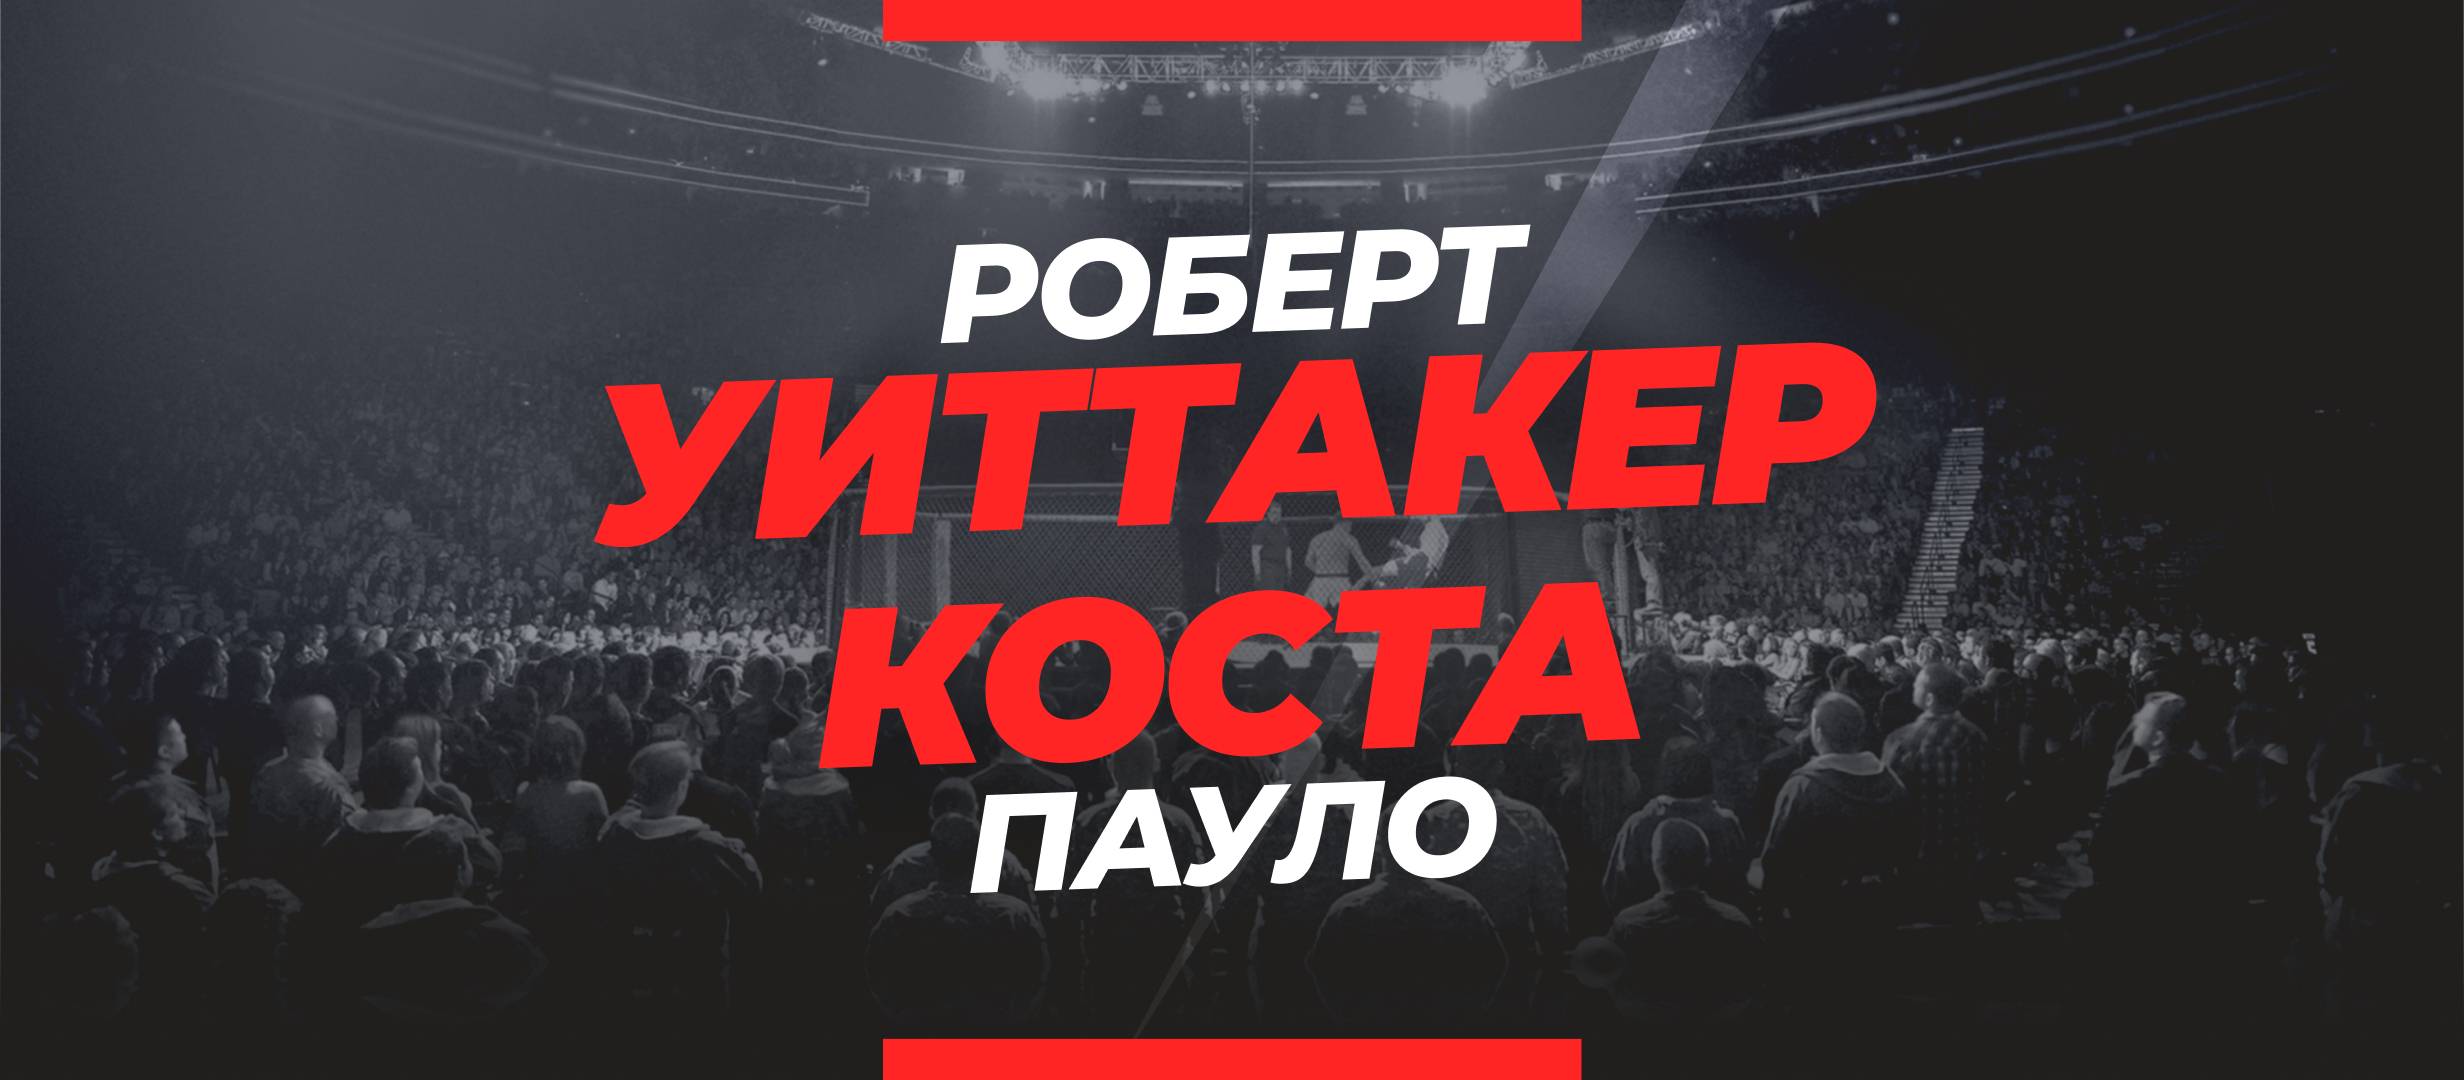 Уиттакер — Коста: ставки и коэффициенты на бой UFC 298